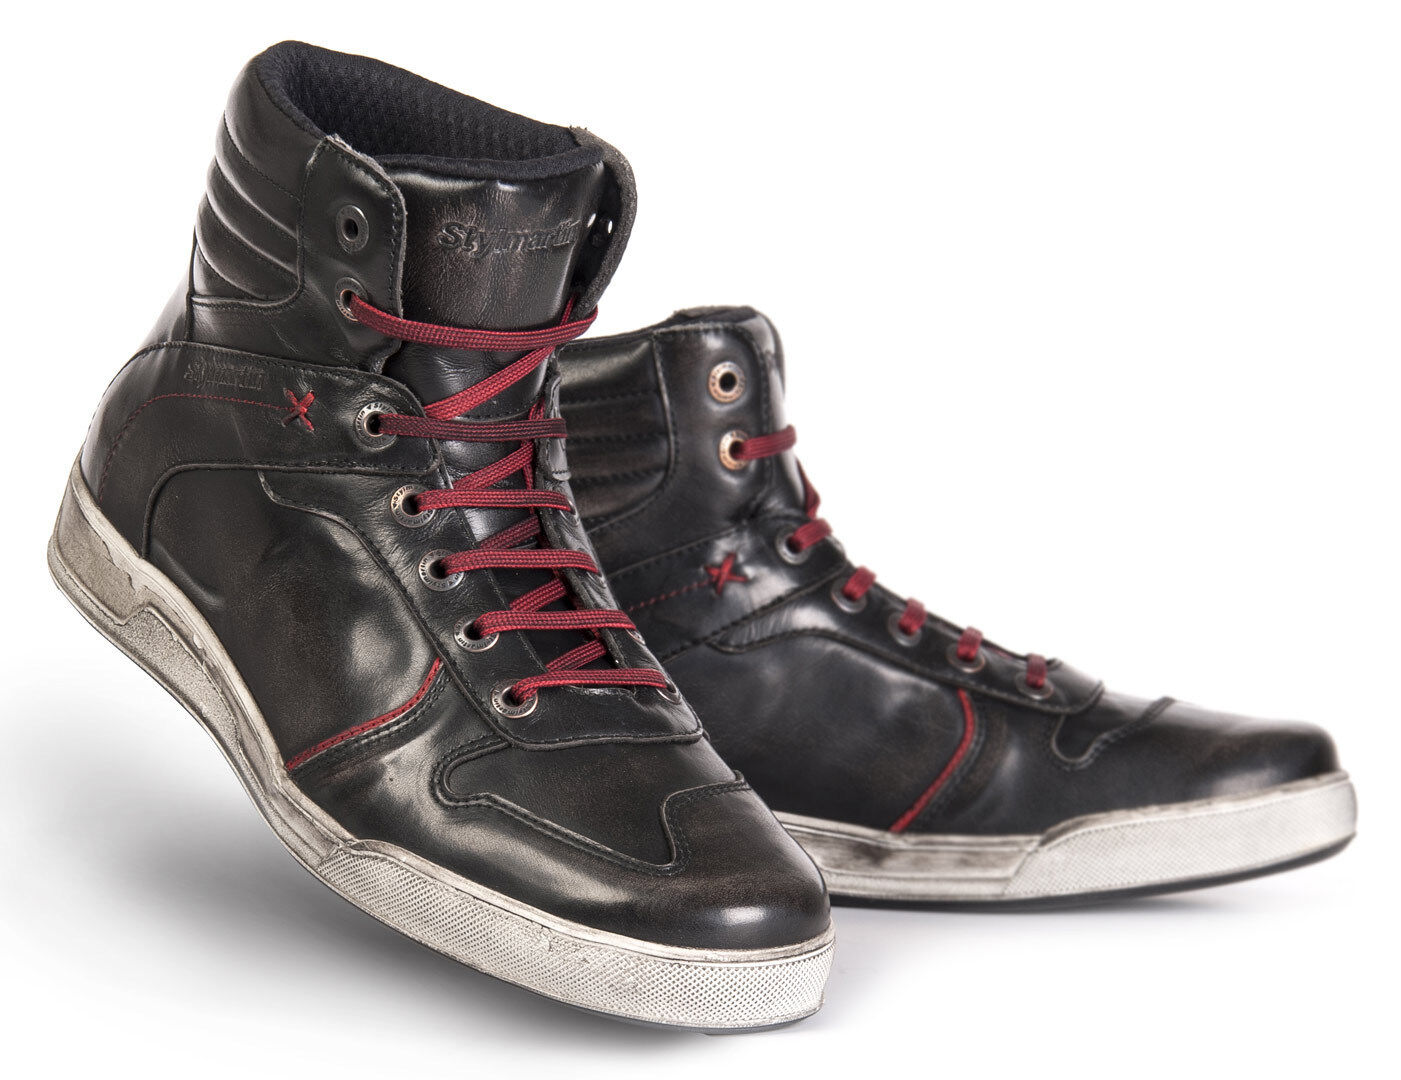 Stylmartin Iron Zapatos de motocicleta - Negro Rojo (41)